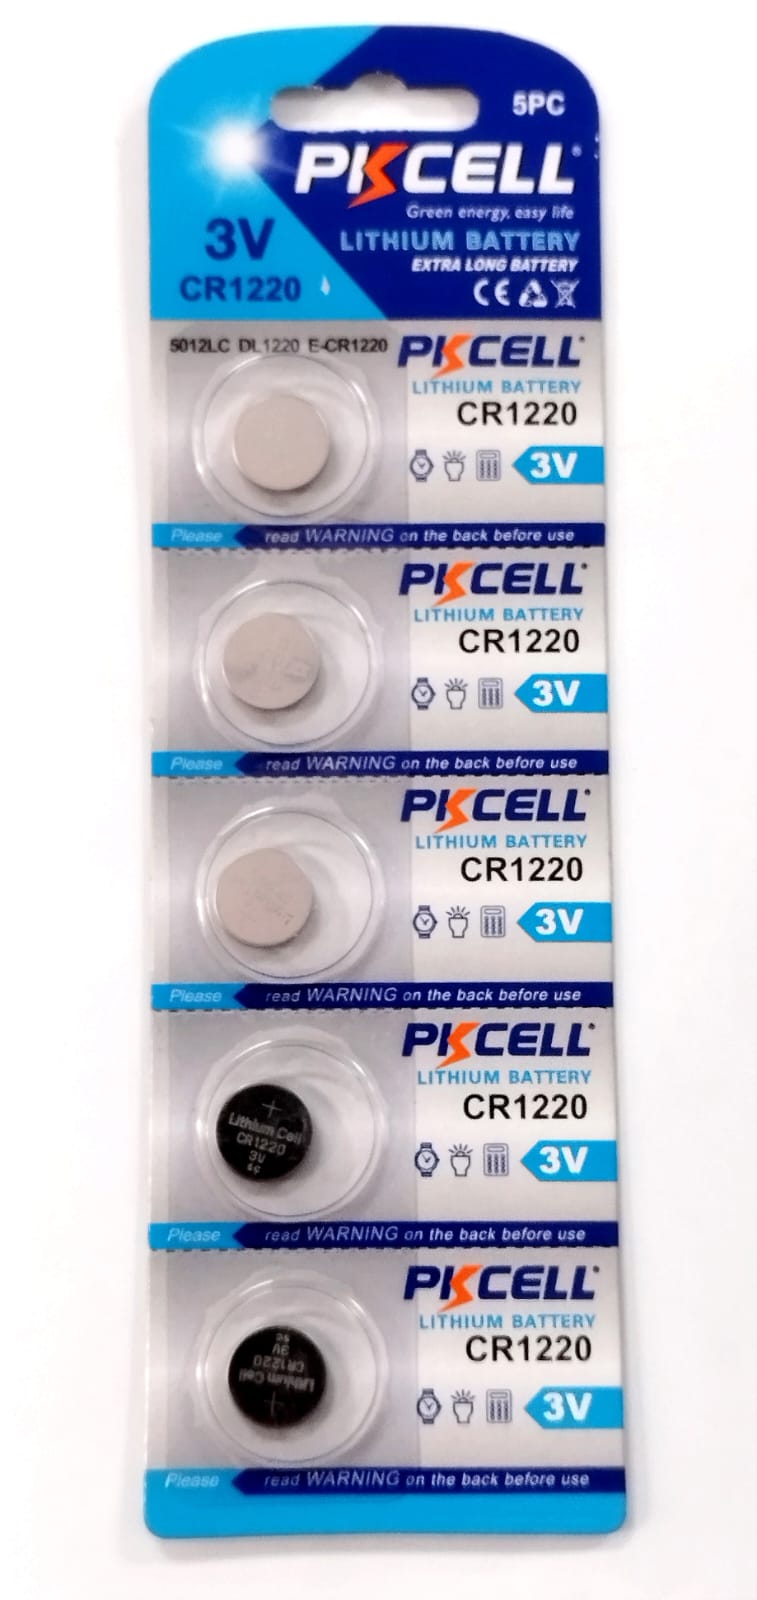 Pila para Reloj Control Juguete Pkcell 3V CR1220 Lithium Bateria - Pkcell